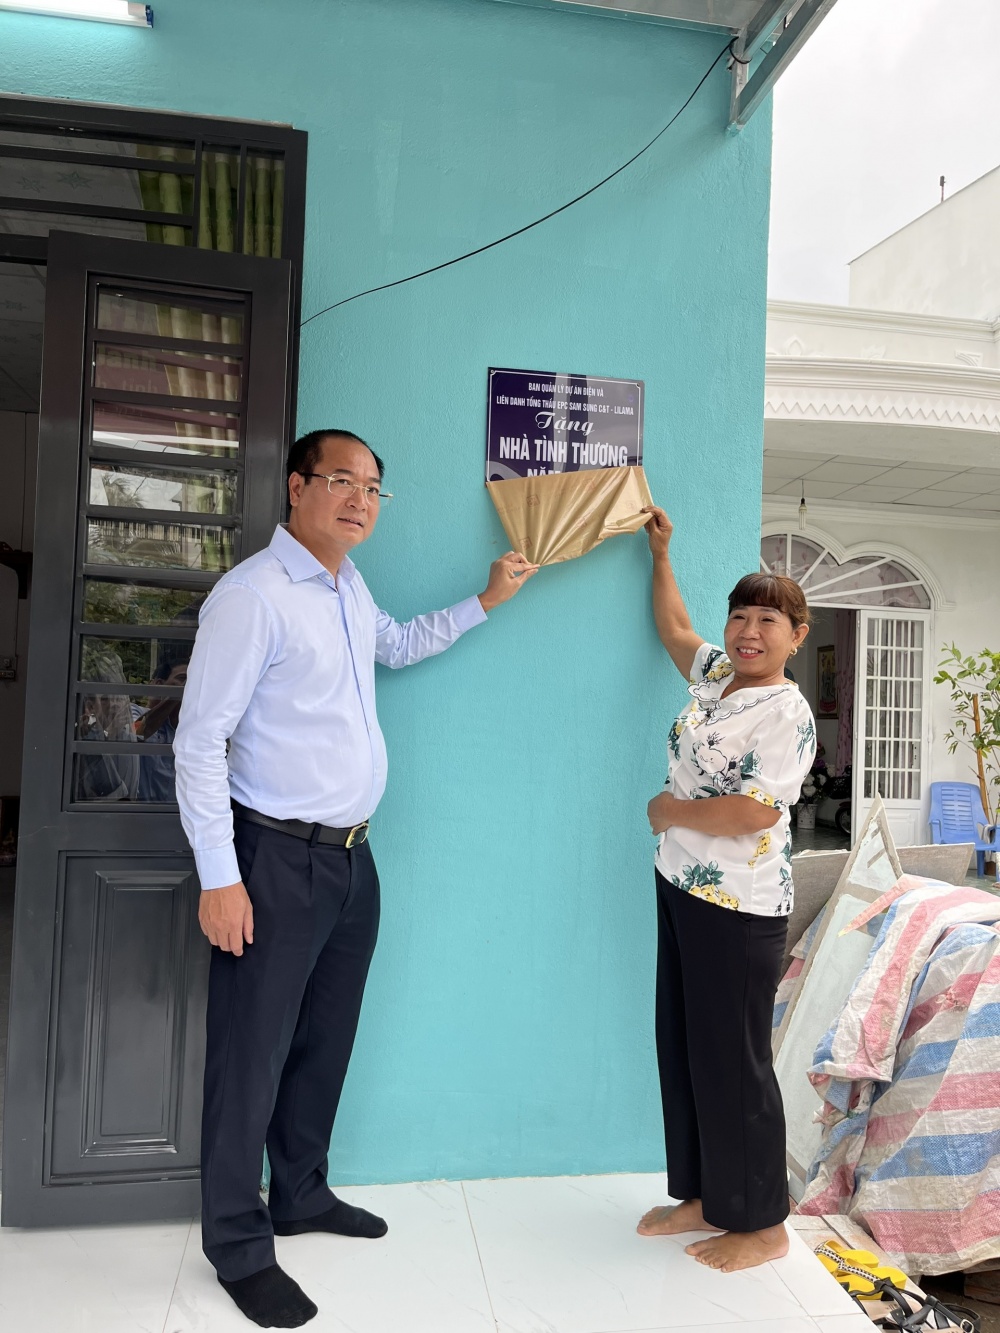 PV Power/Ban Quản lý Dự án Điện trao tặng 2 nhà tình thương tại Nhơn Trạch, Đồng Nai